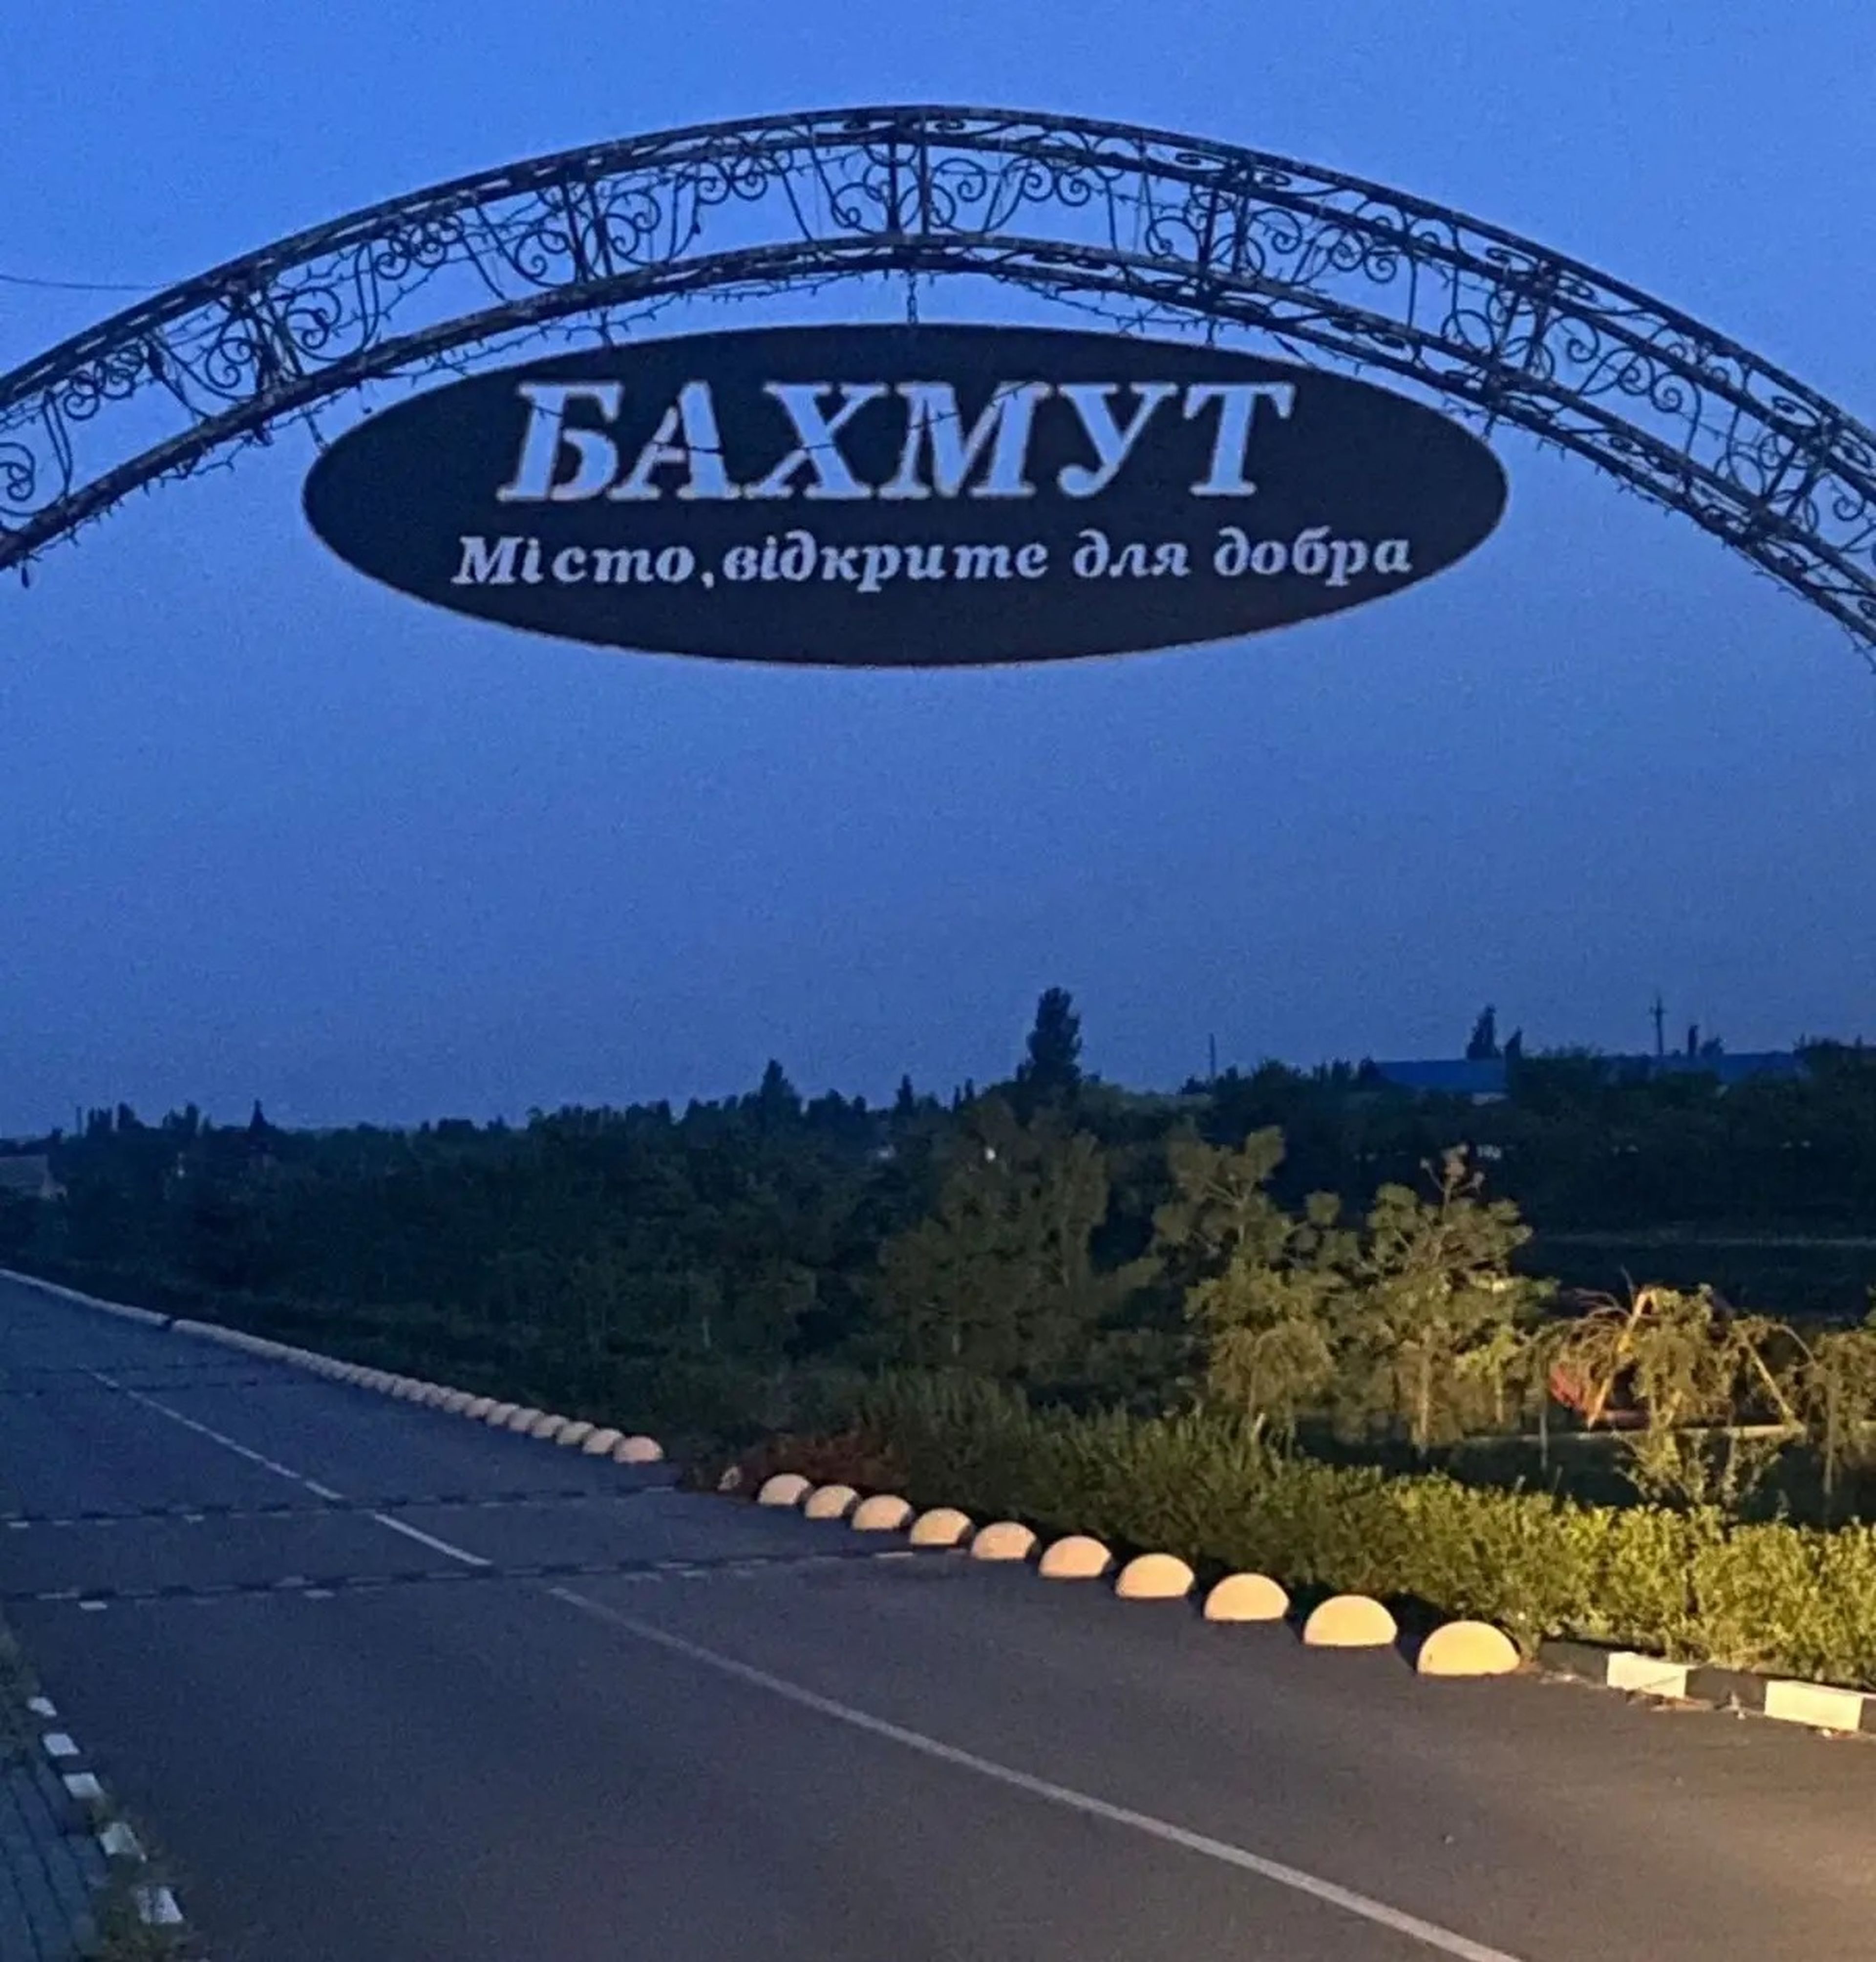 Un cartel anuncia: "Bajmut, un lugar para la bondad". 